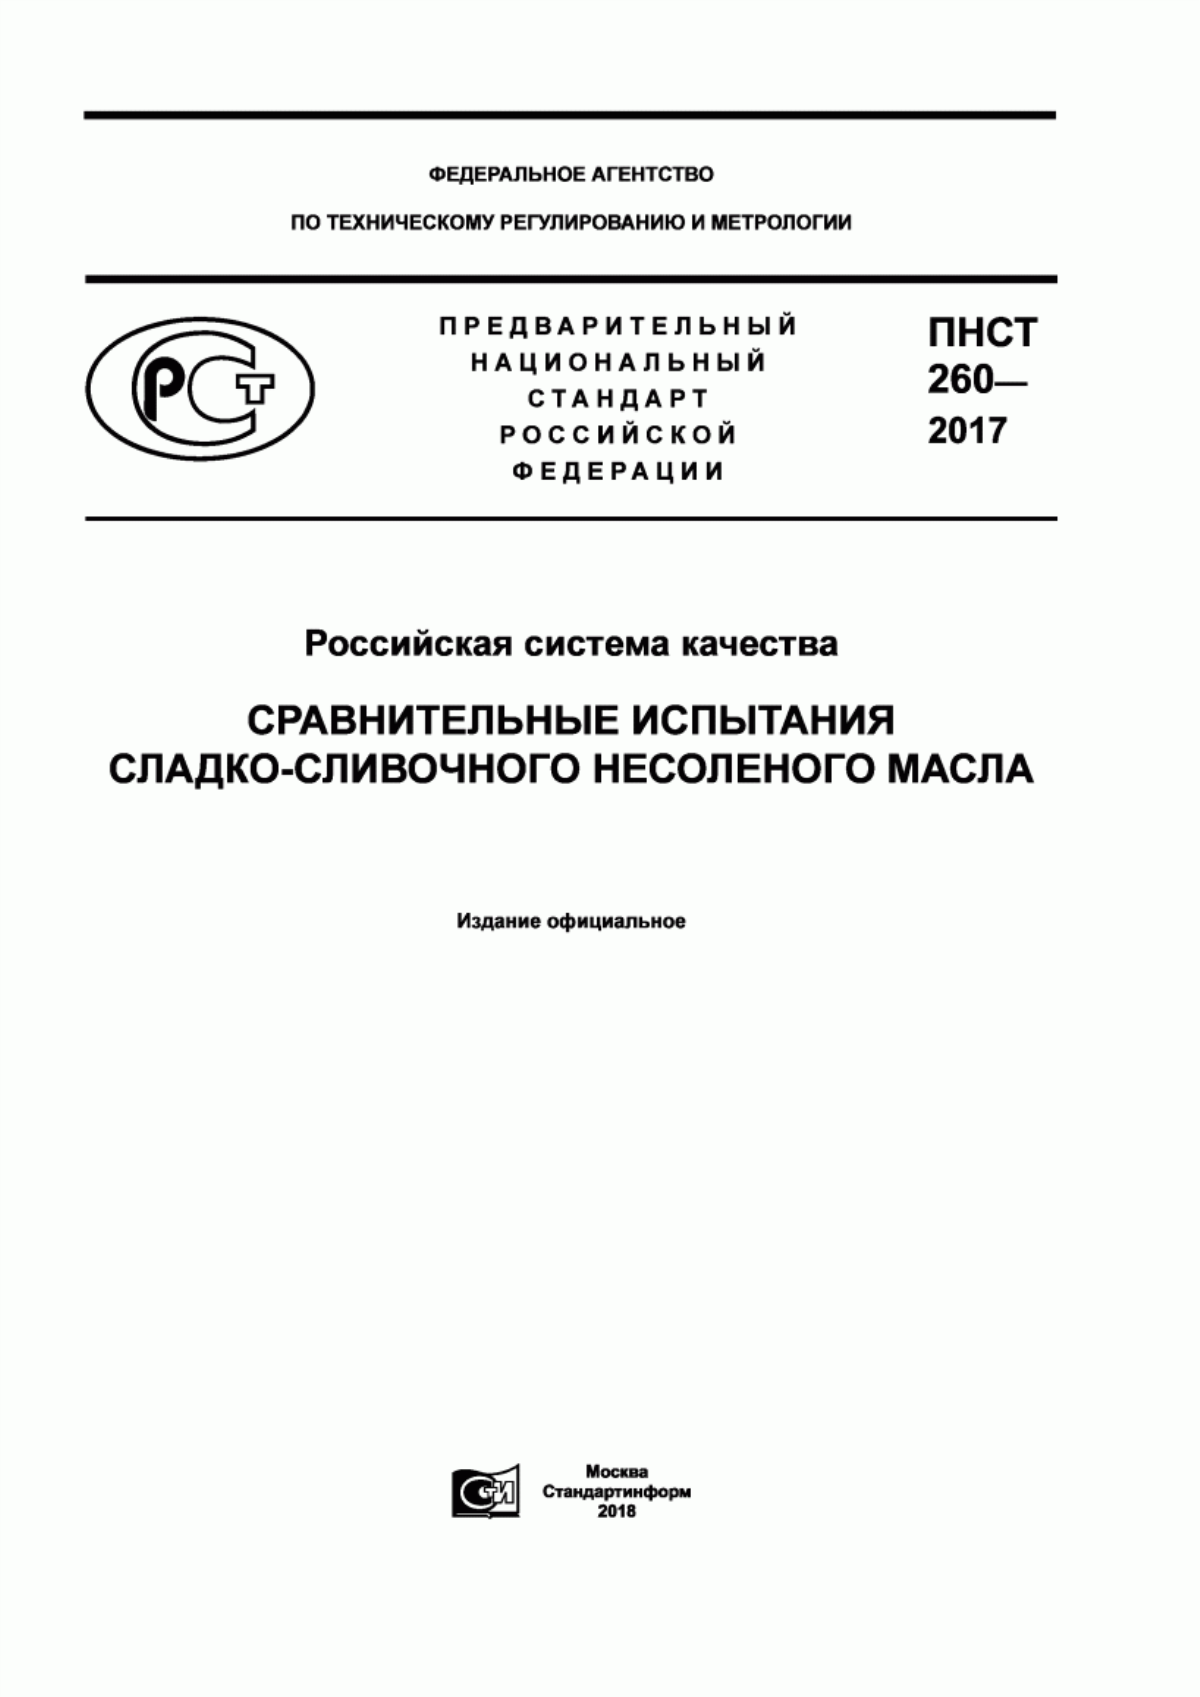 ПНСТ 260-2017 Российская система качества. Сравнительные испытания сладкосливочного несоленого масла